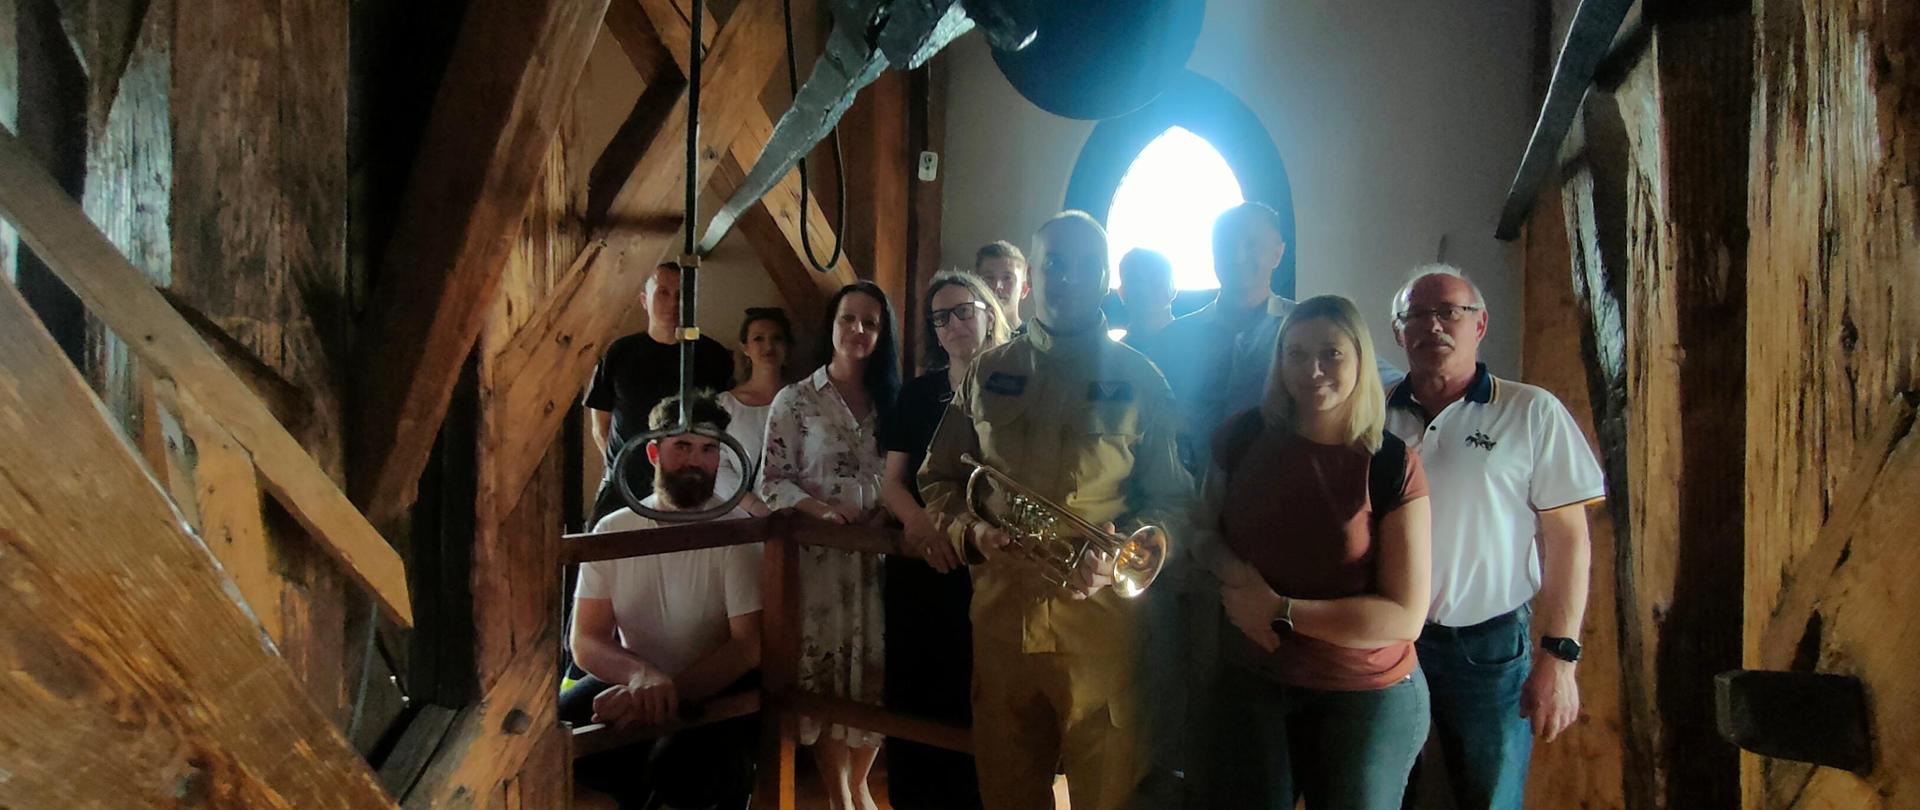 Pomieszczenie na szczycie wieży Kościoła Mariackiego. Zdjęcie pamiątkowe uczestników z trębaczem. Pomiędzy uczestnikami ubrany w umundurowanie służbowe strażak trzymający w ręku trąbkę koloru złotego. 